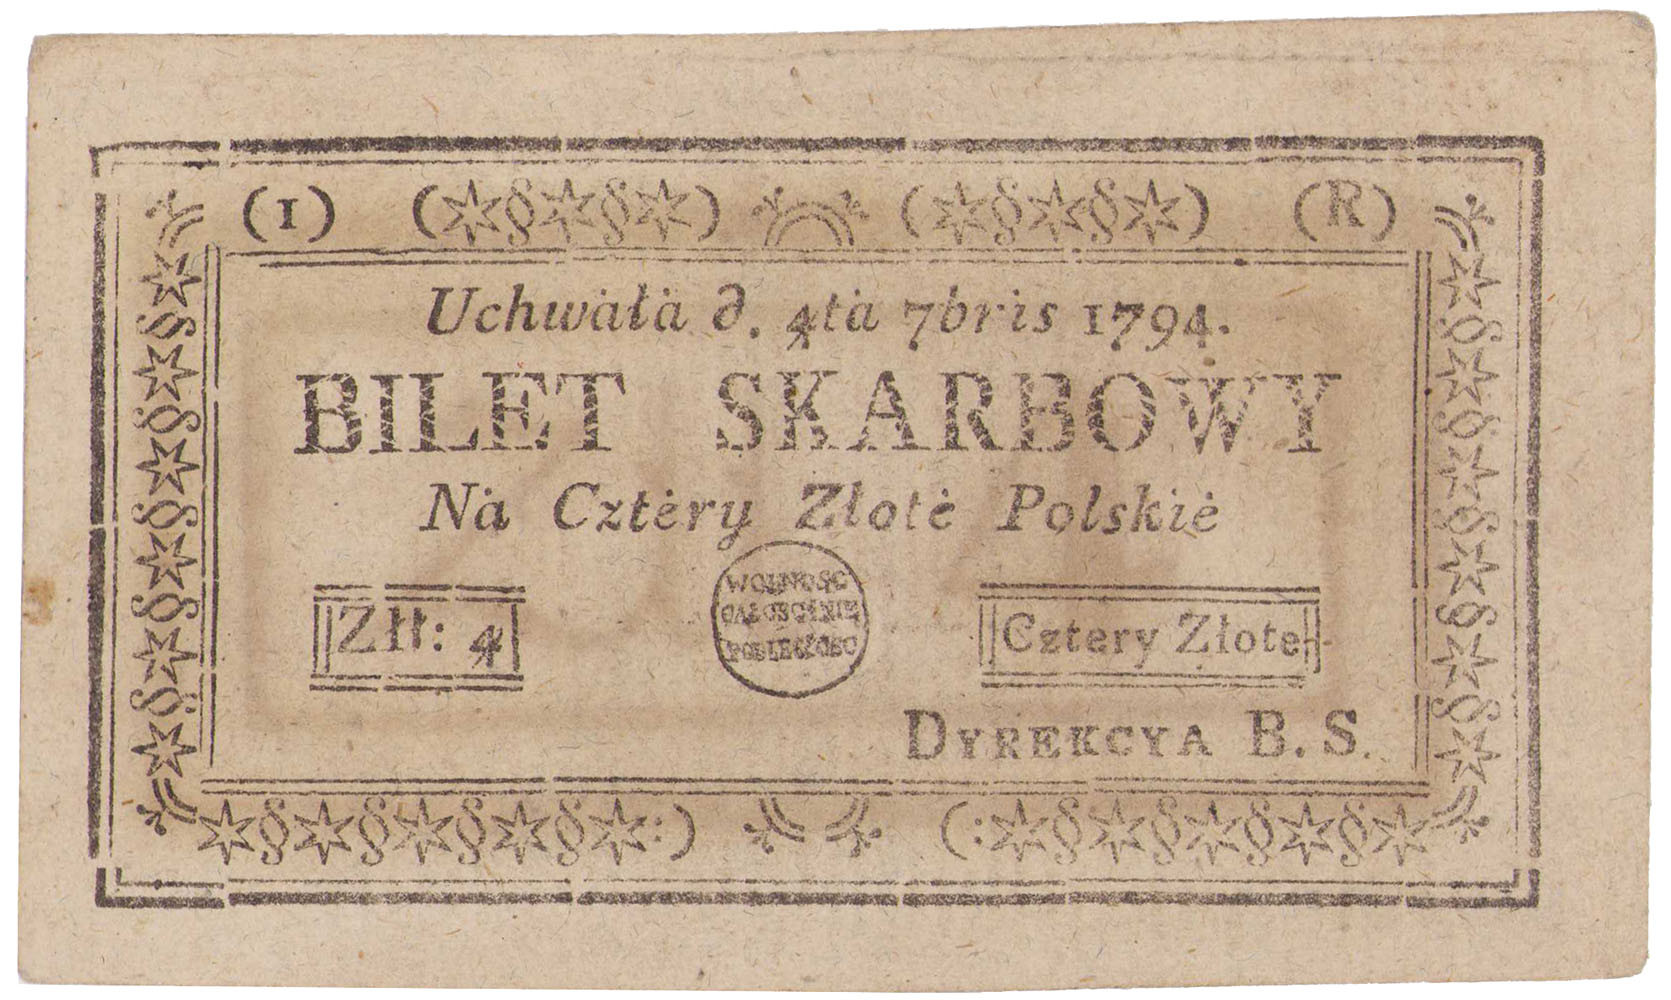 Insurekcja Kościuszkowska. Bilet skarbowy 4 złote polskie 1794, seria 1-R